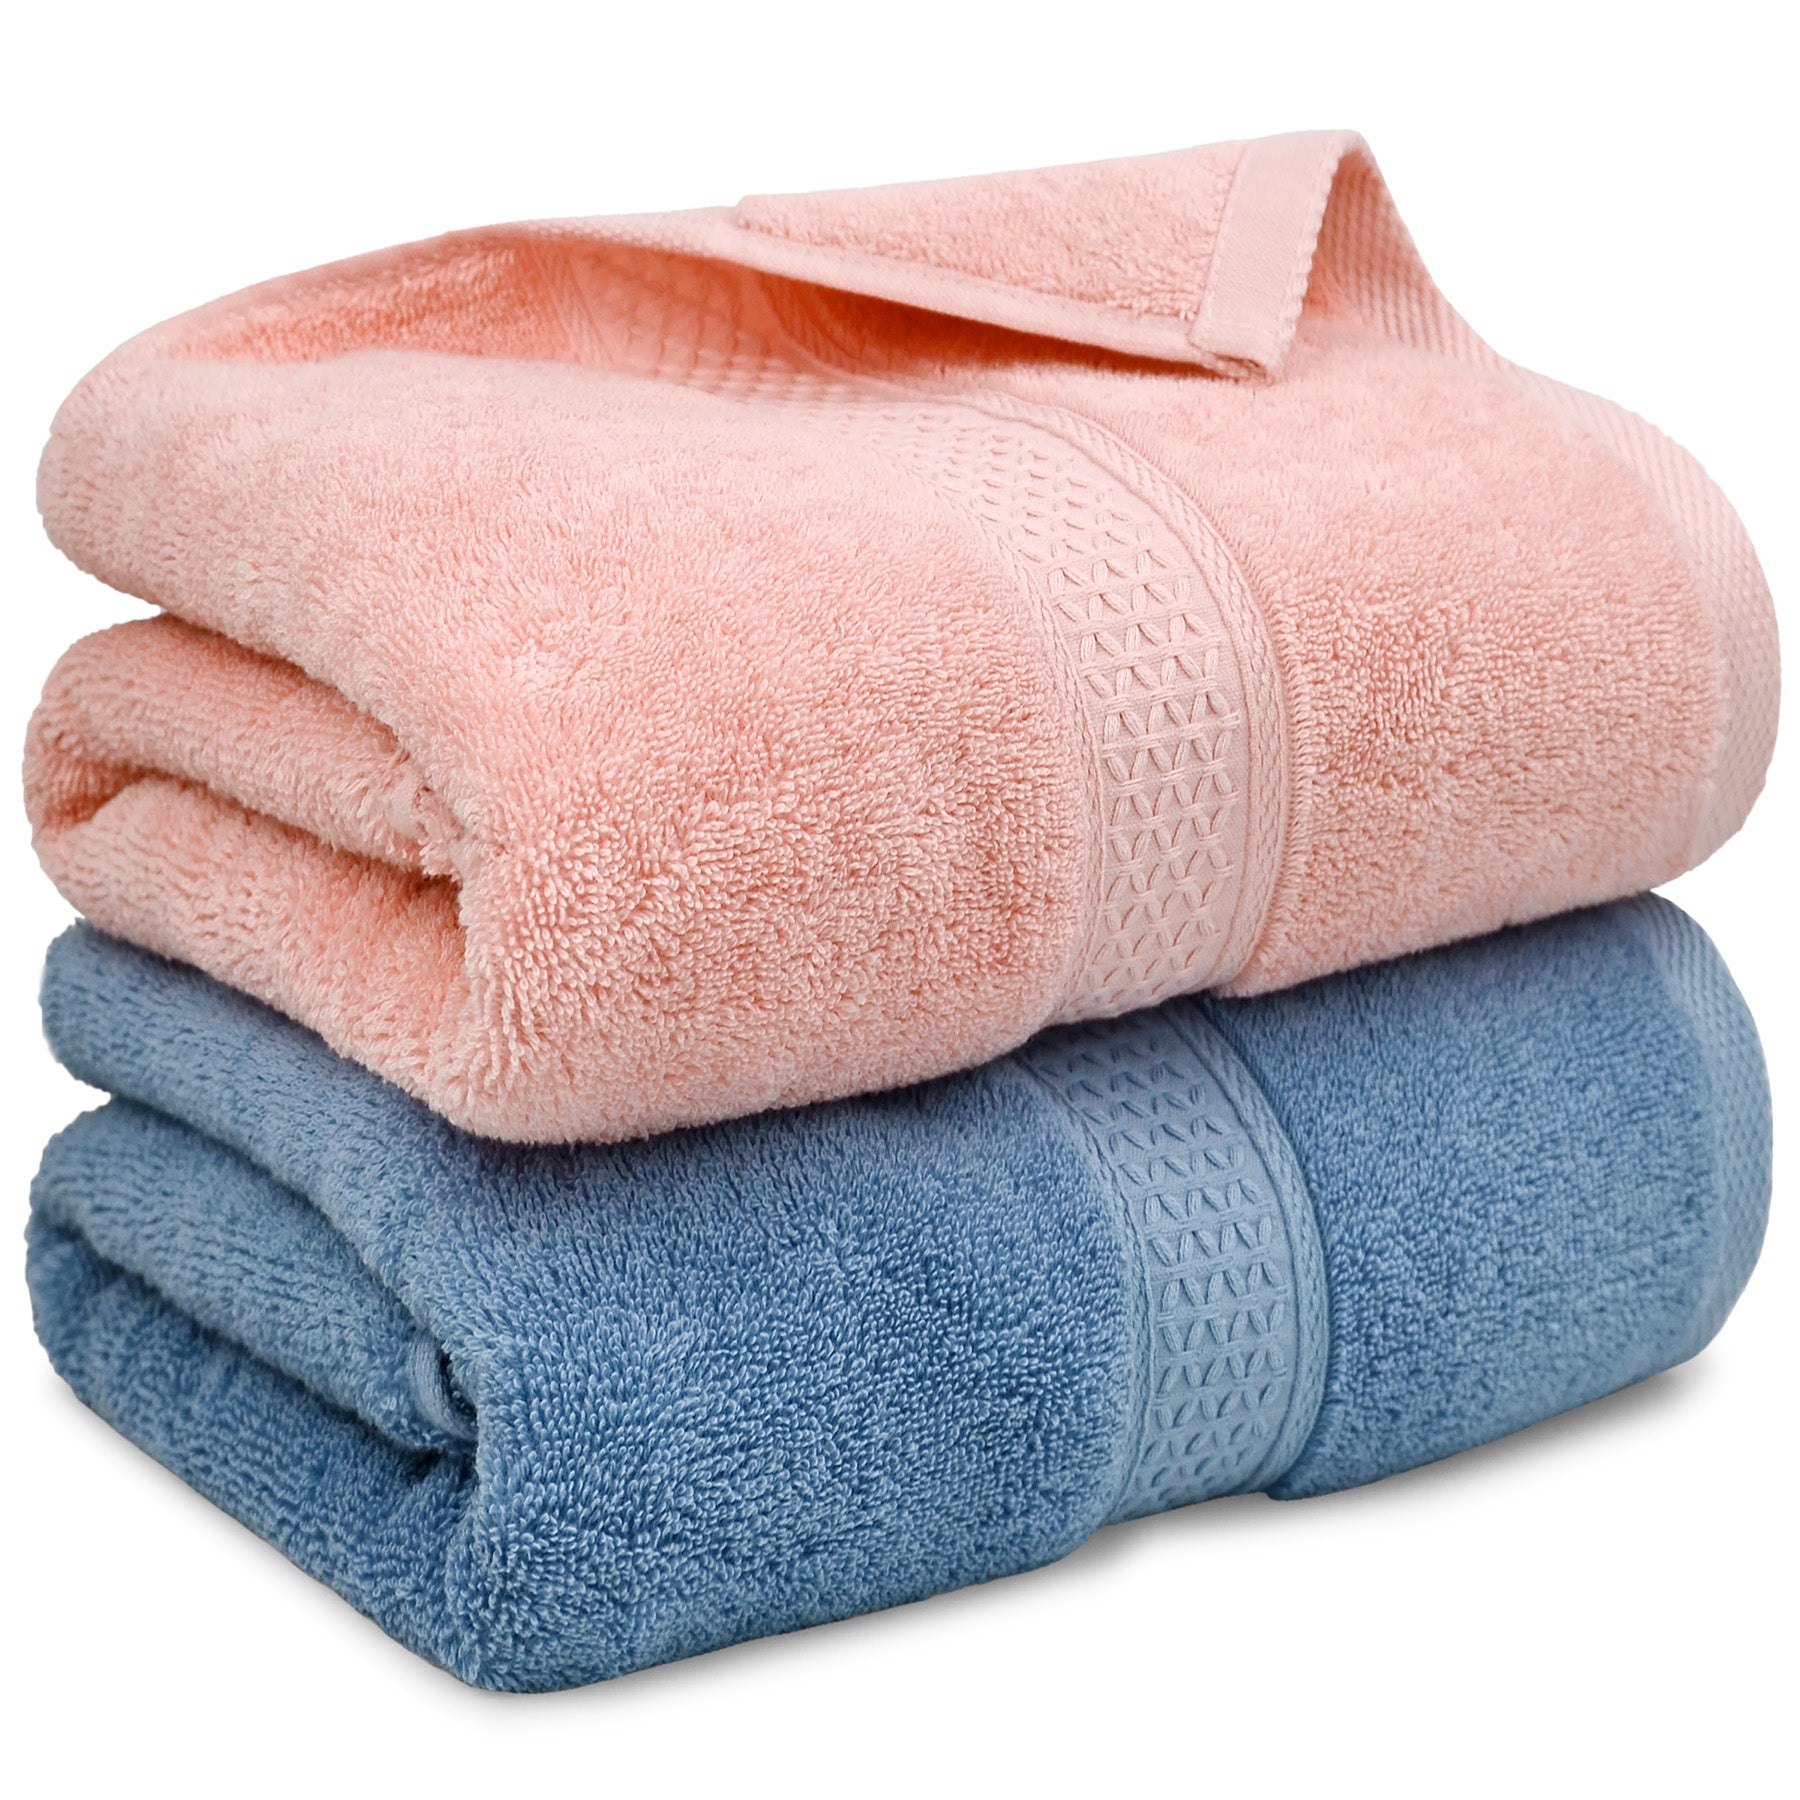 Plain Colors Cotton Bath Towel, Weight: 500 Gsm, Size: 70 X 140 cm